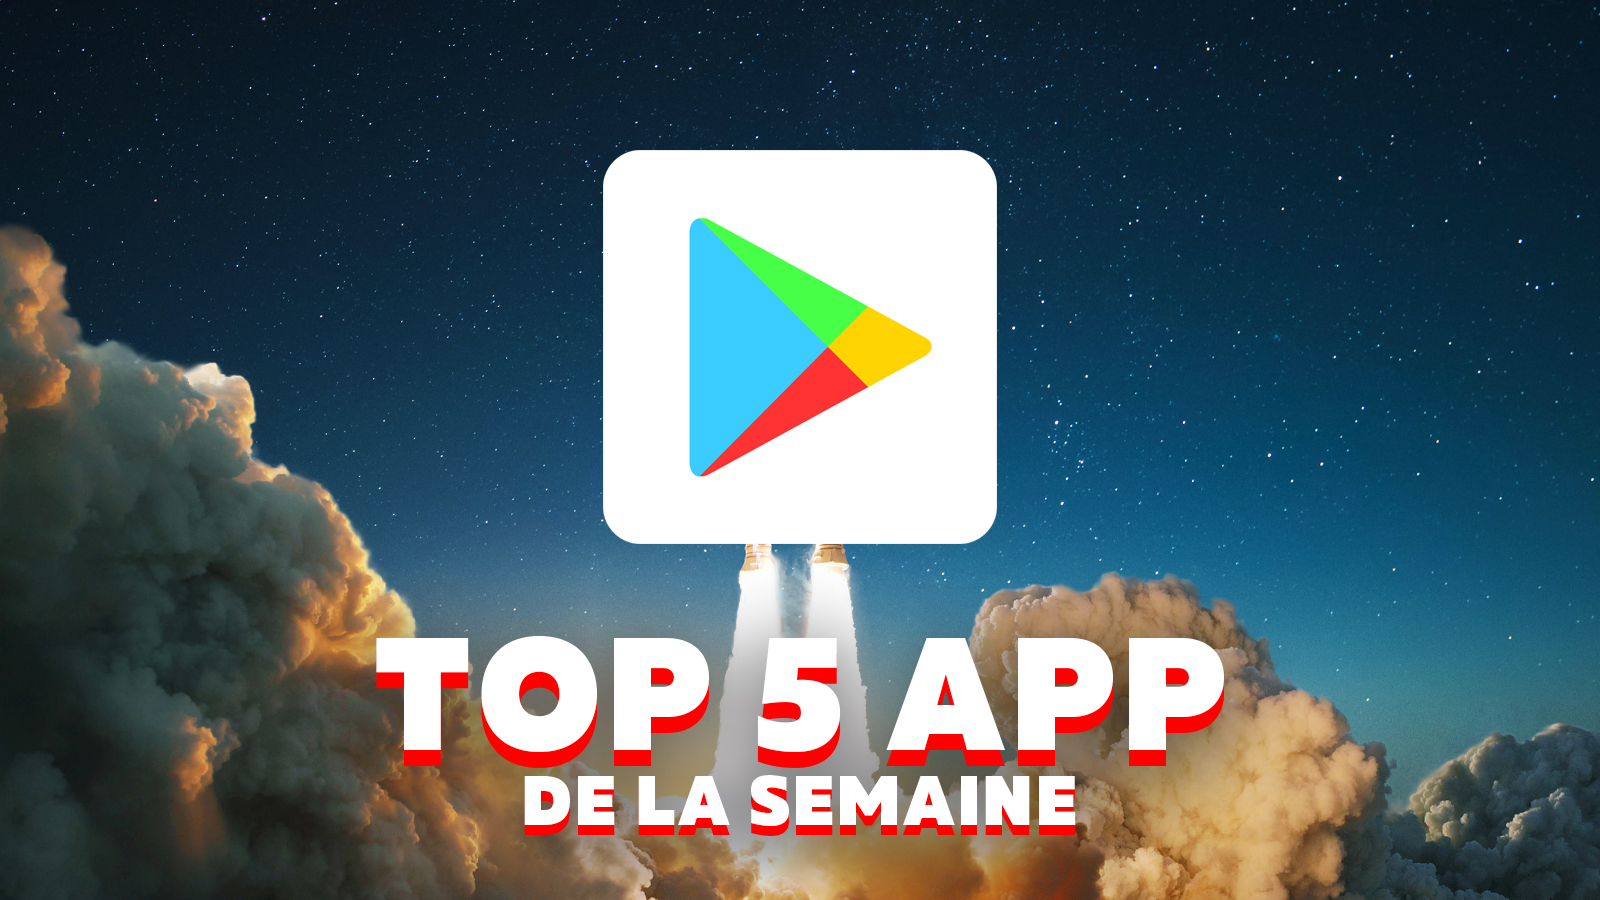 Top 5 app